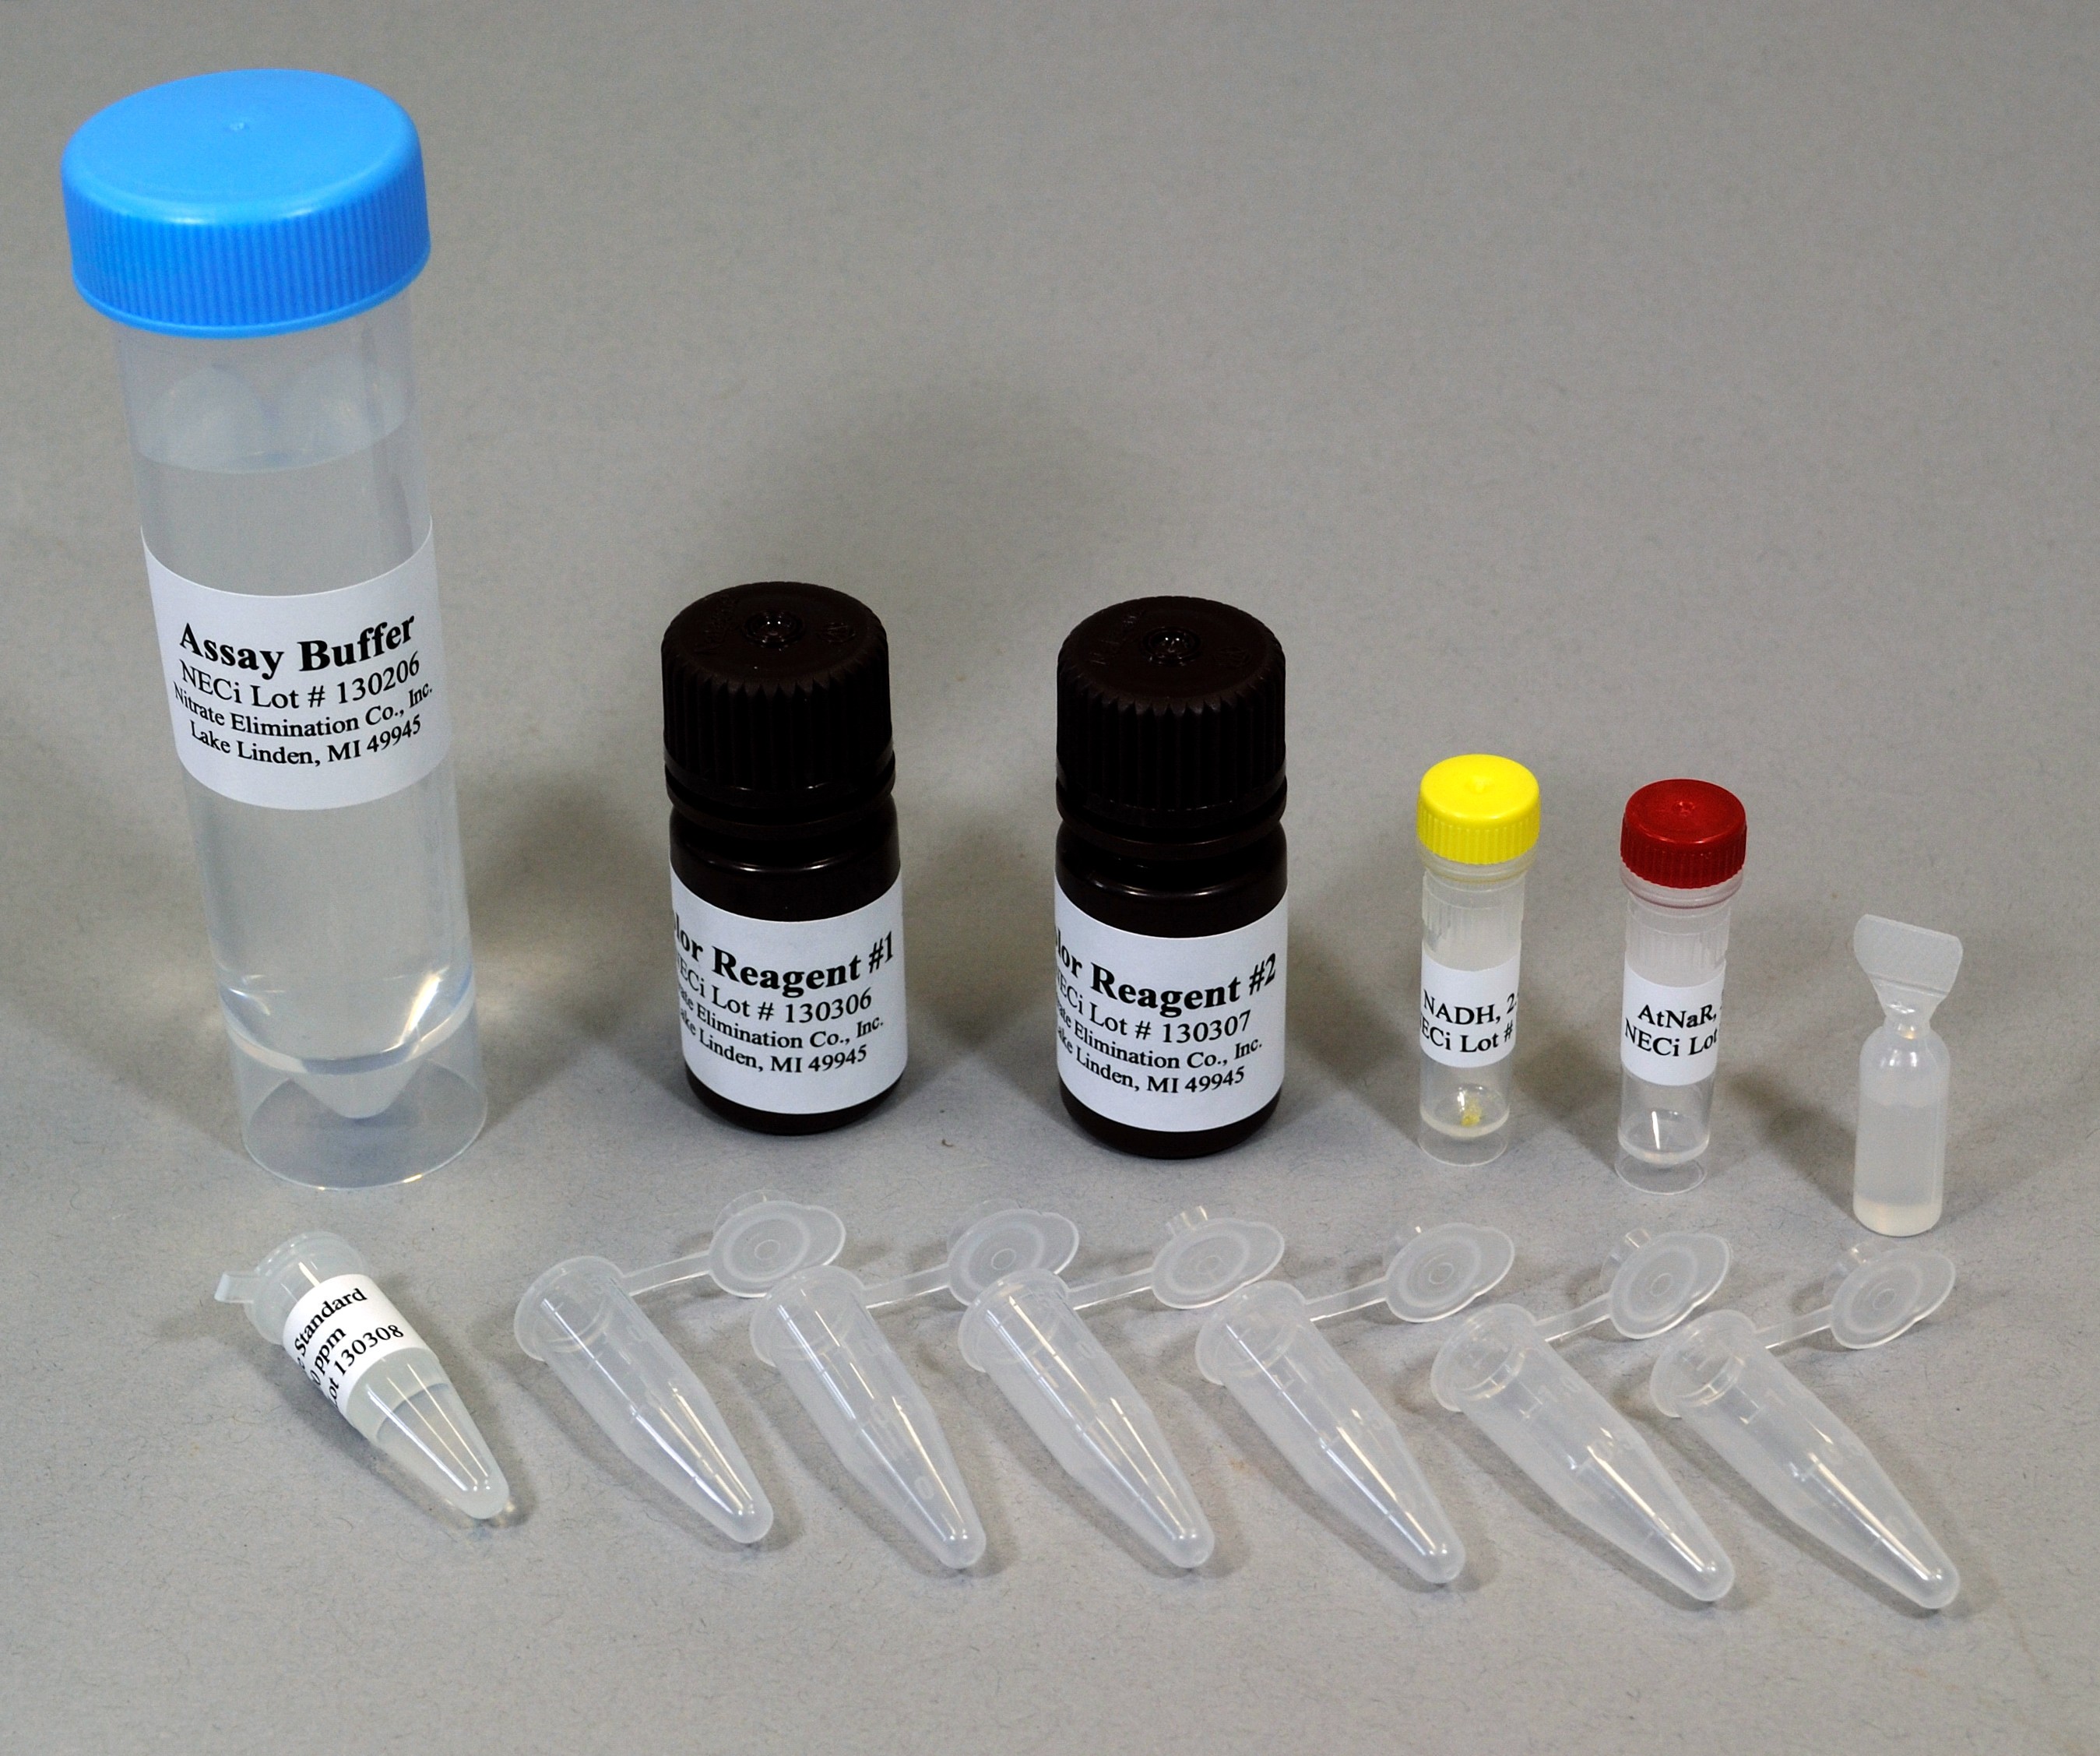 Test Tube Format Nitrate Test Kit: 25 Samples